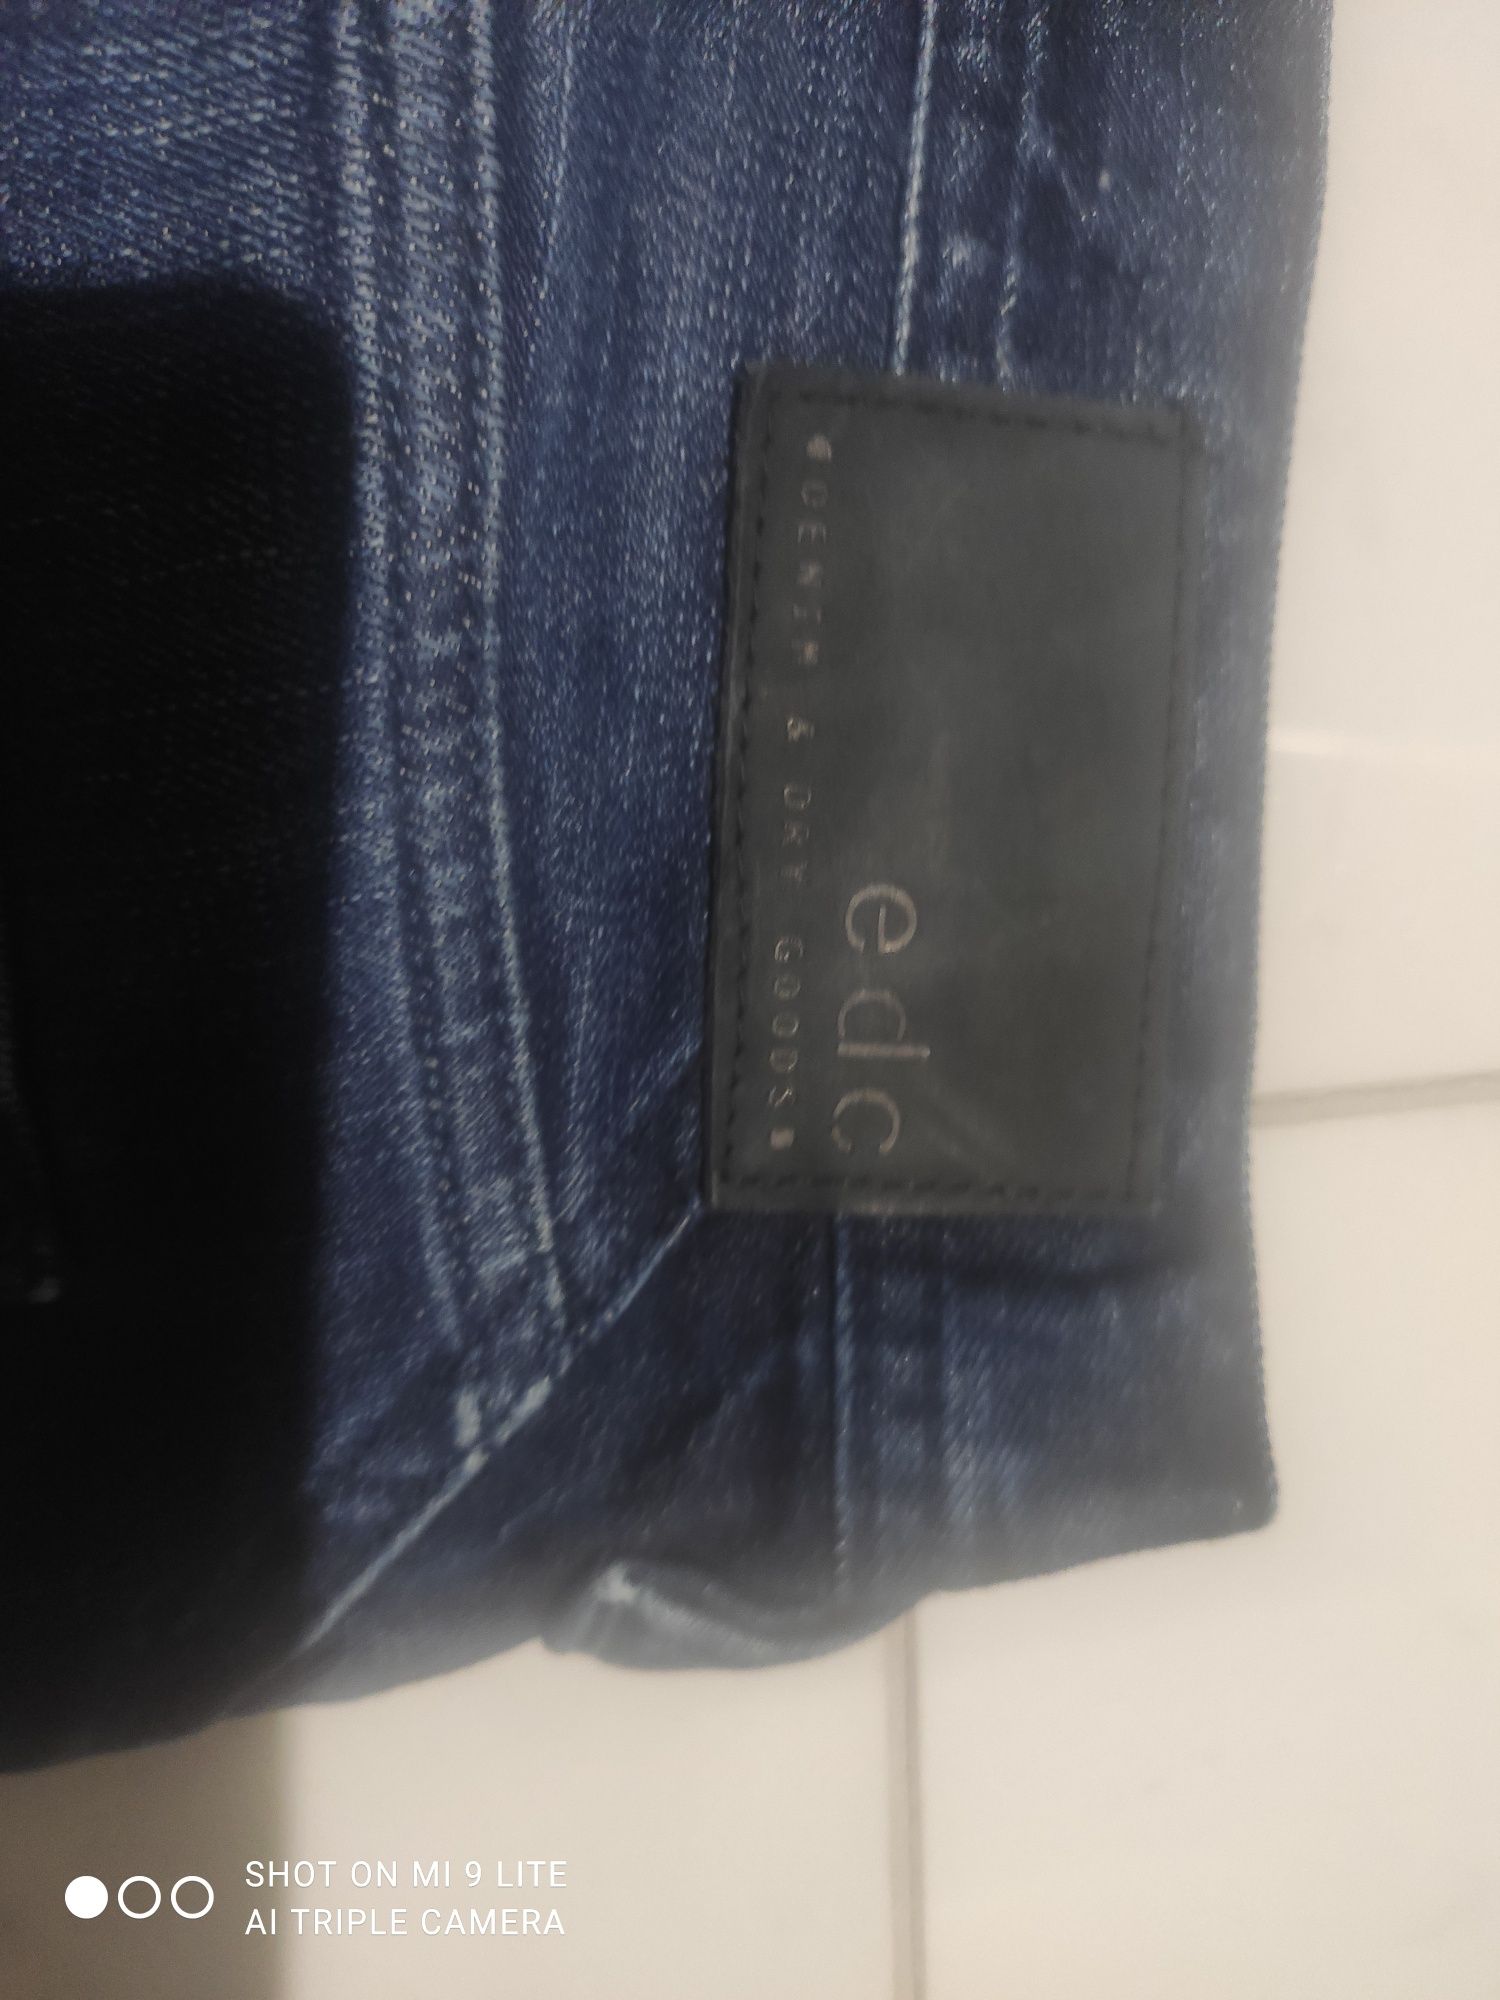 Spodnie jeansowe rozmiar 32